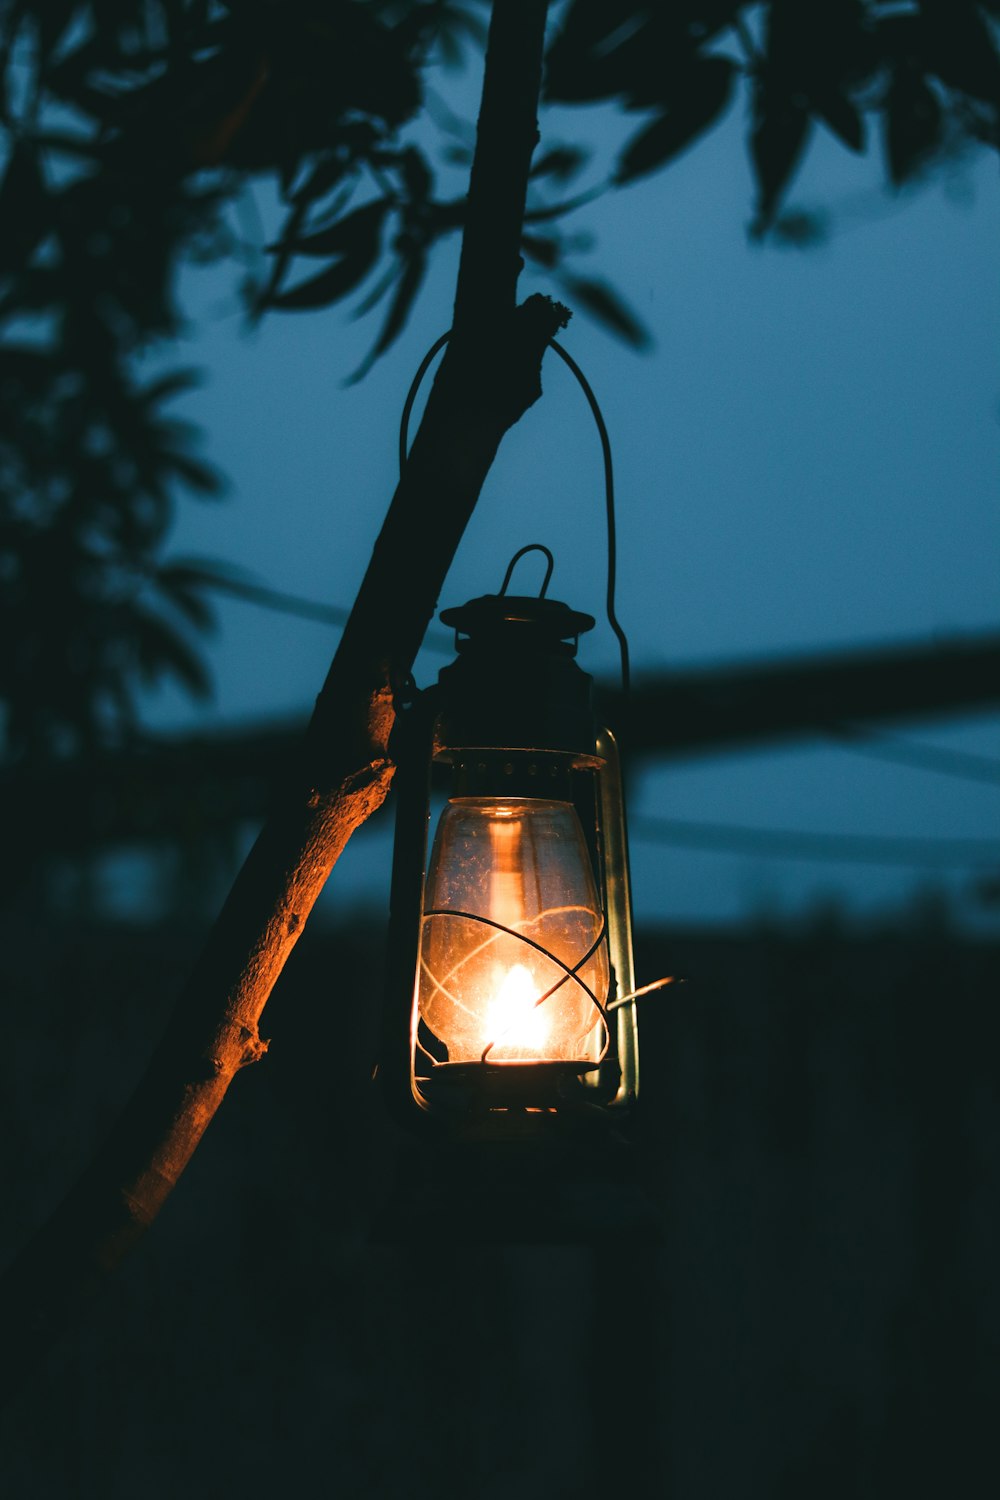 black lantern on tree branch during night time